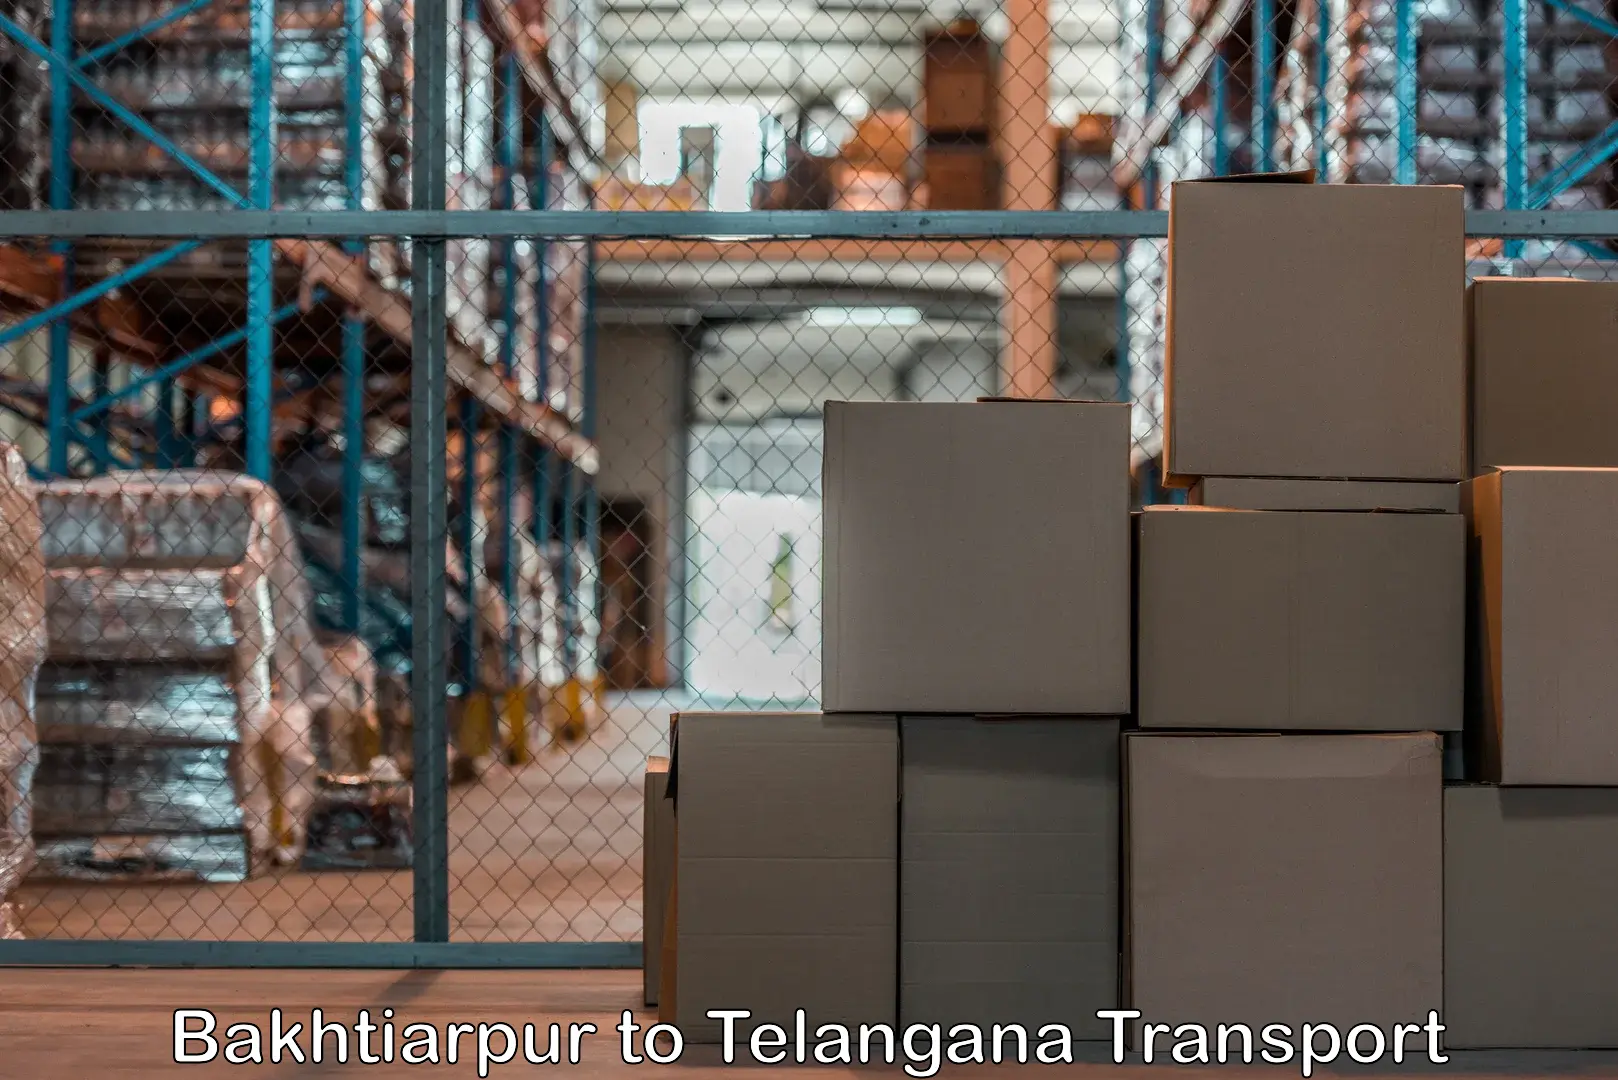 Shipping partner Bakhtiarpur to IIT Hyderabad